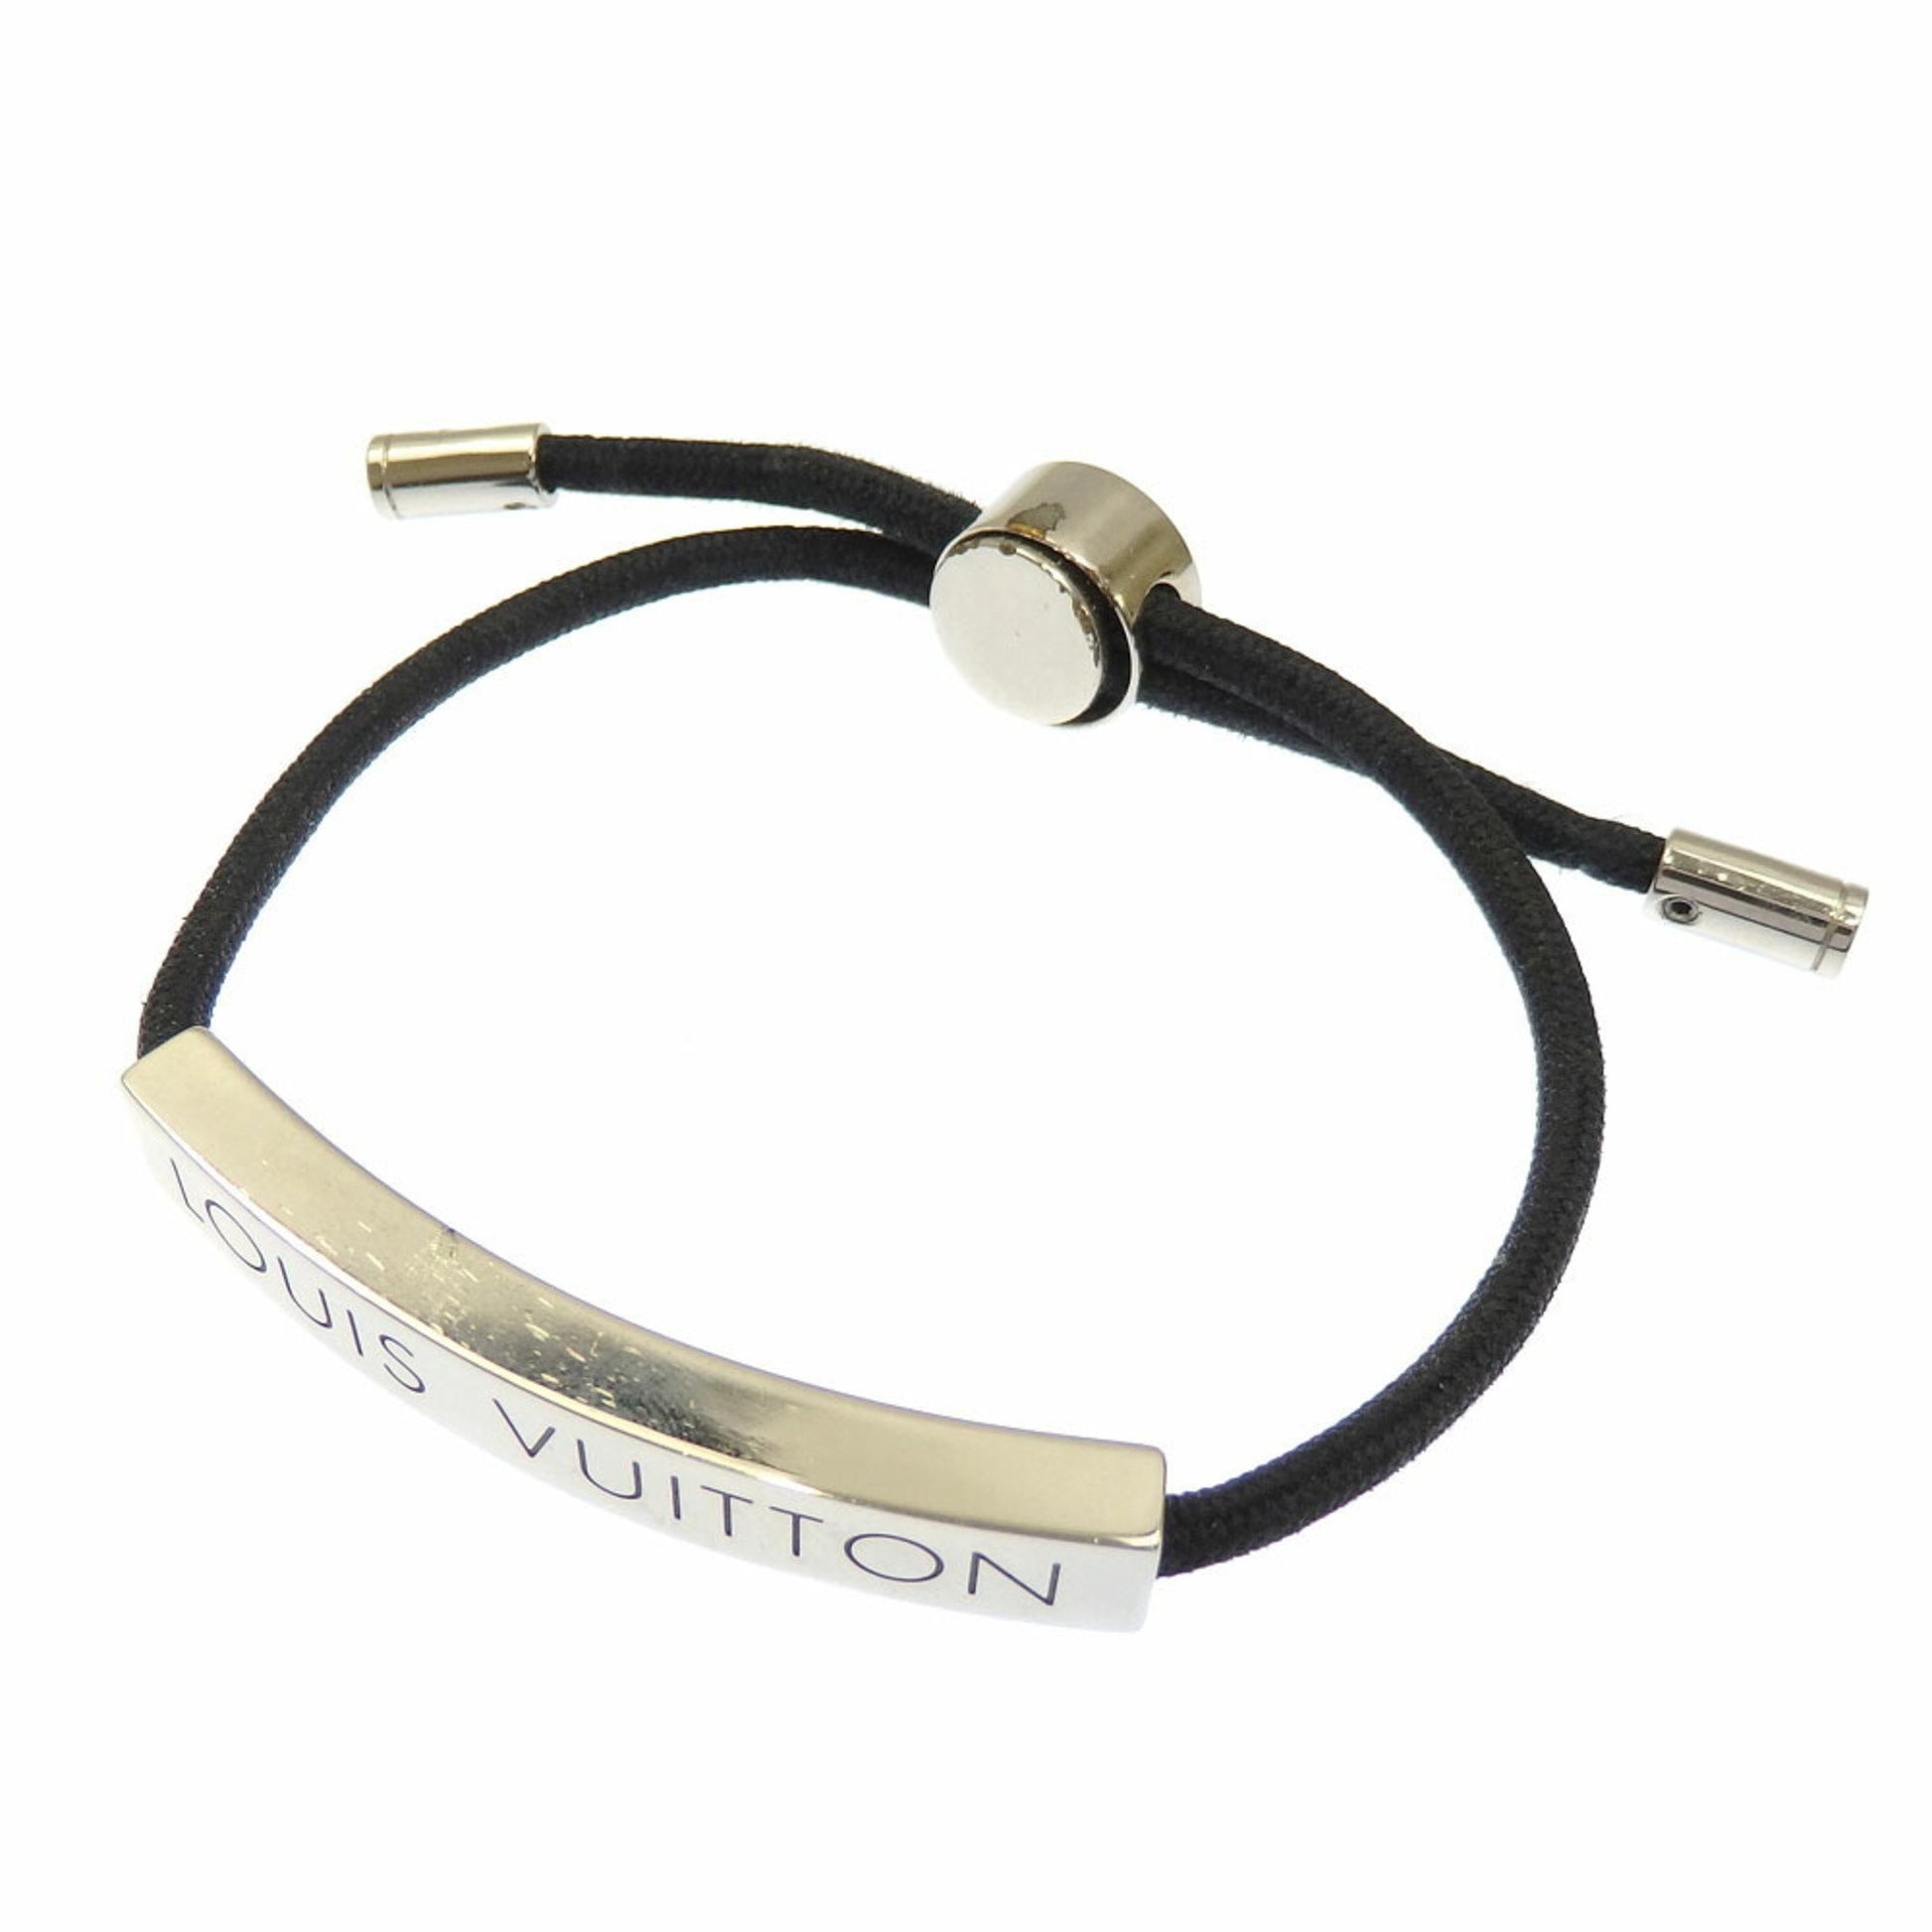 Louis Vuitton - Authenticated Nanogram Bracelet - Metal Gold for Women, Good Condition